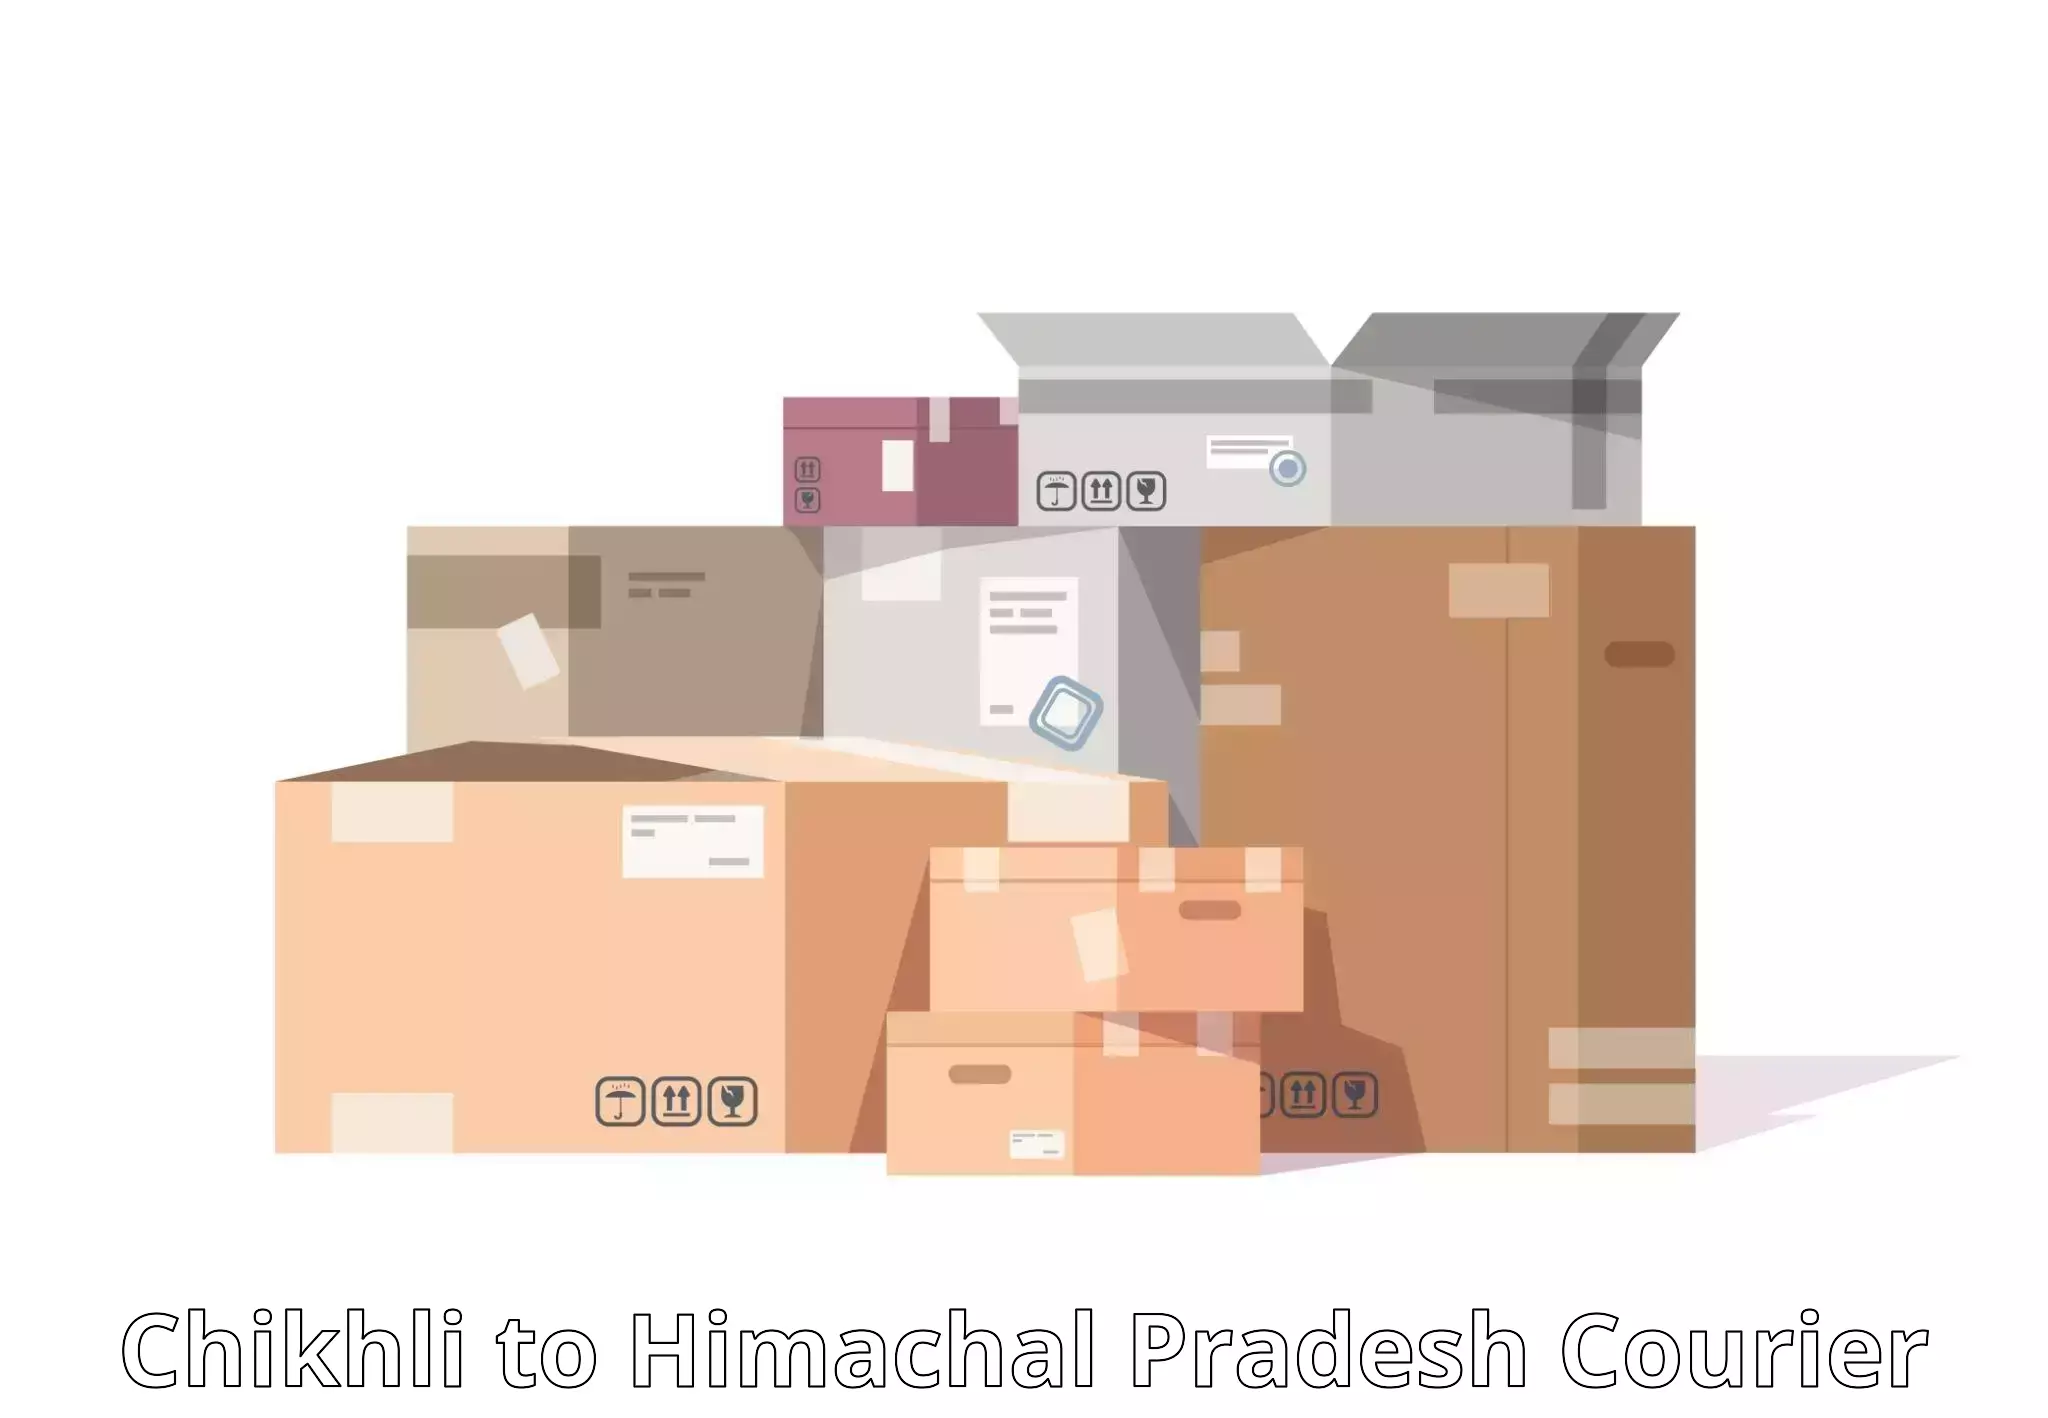 Efficient logistics management Chikhli to Bangana